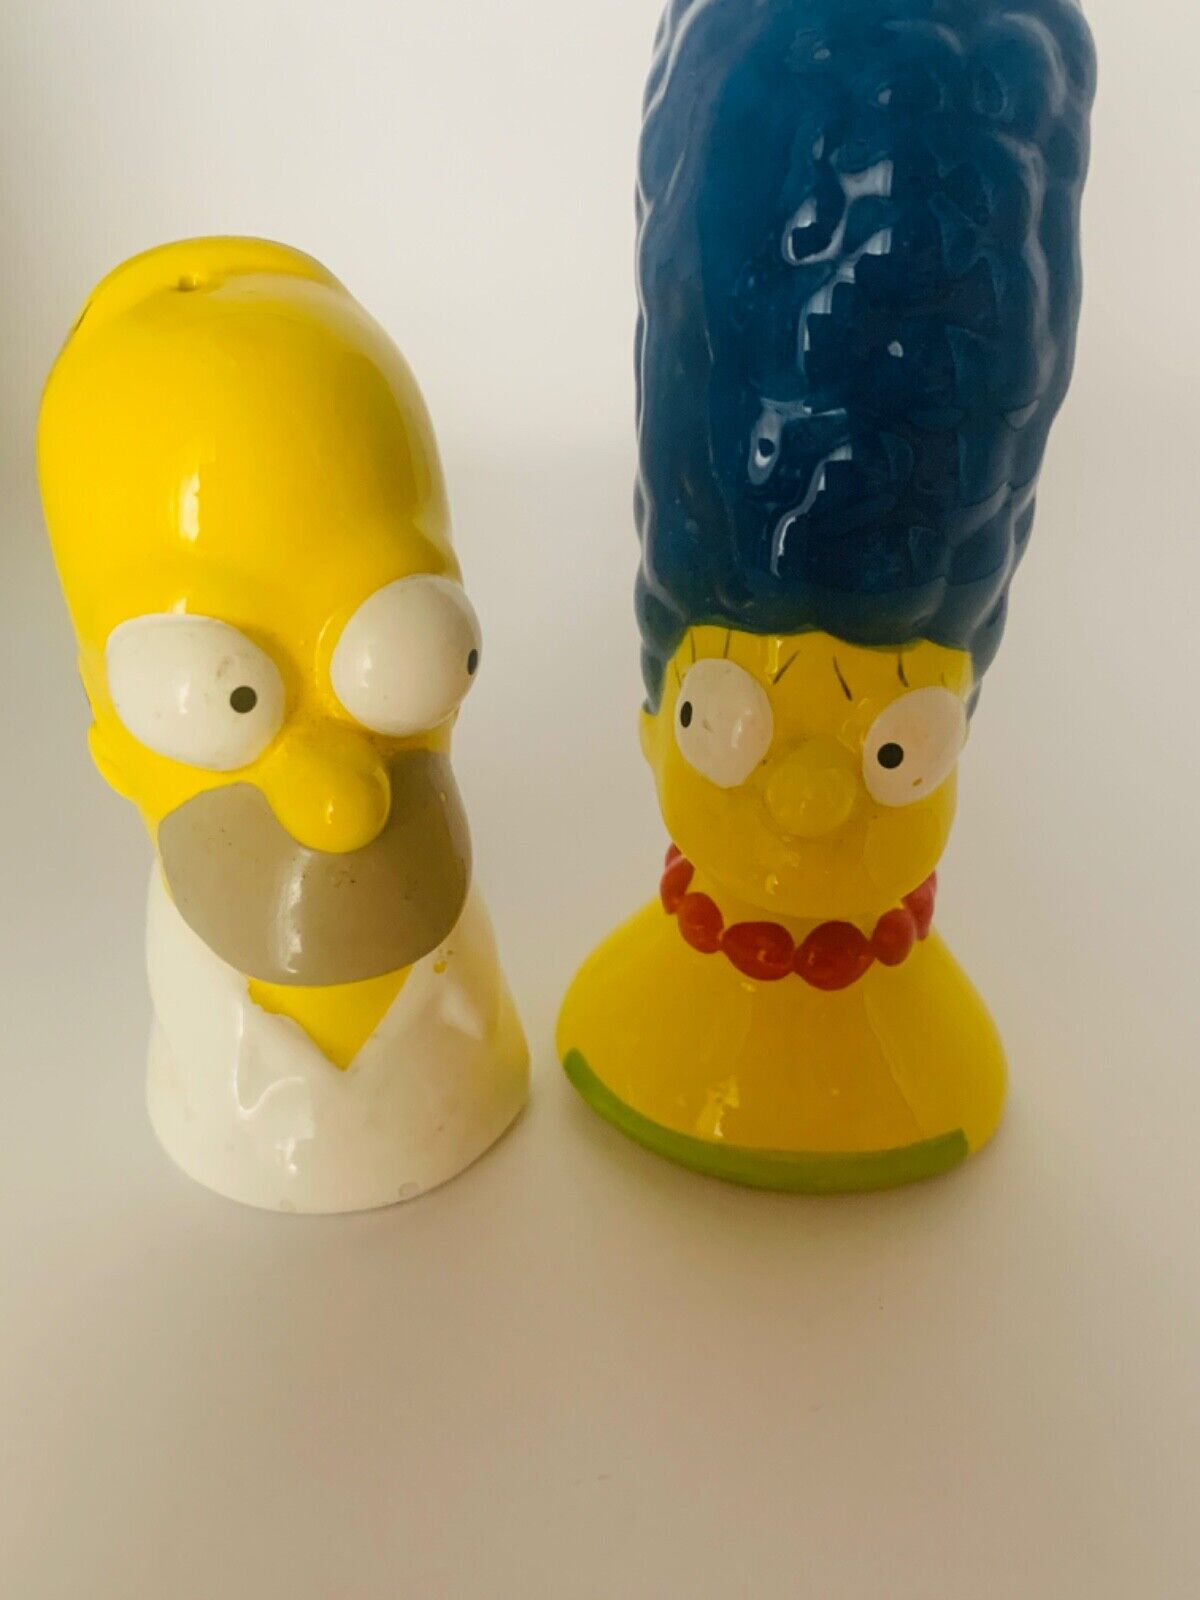 Vintage The Simpsons Homer & Marge Salt and Pepper Shaker Set 2000 Ceramic